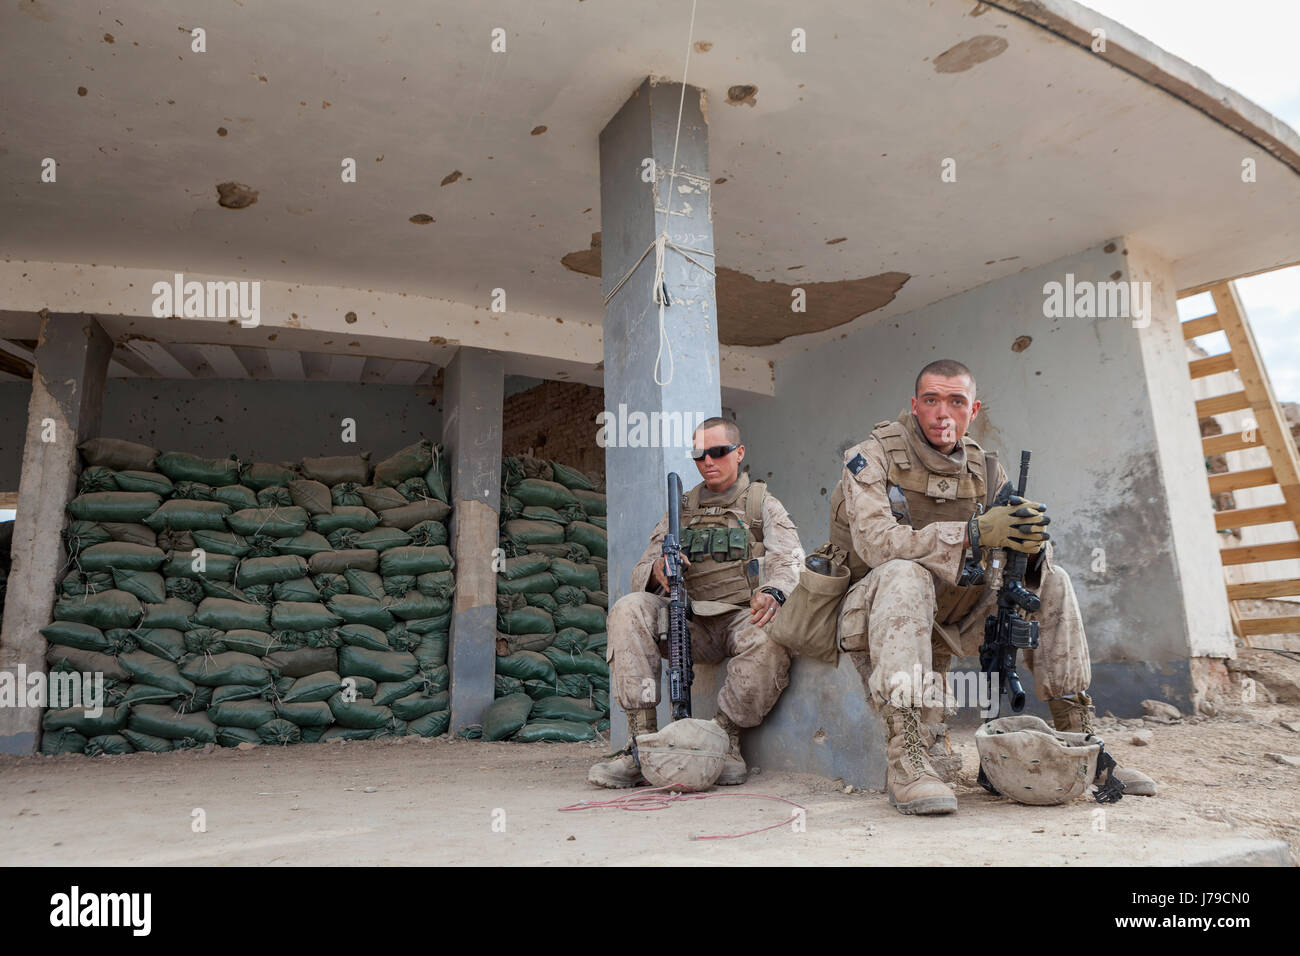 Us-marines Entspannen nach schweren Kämpfen während der Op moshtarak in marjah, Provinz Helmand in Afghanistan. Stockfoto